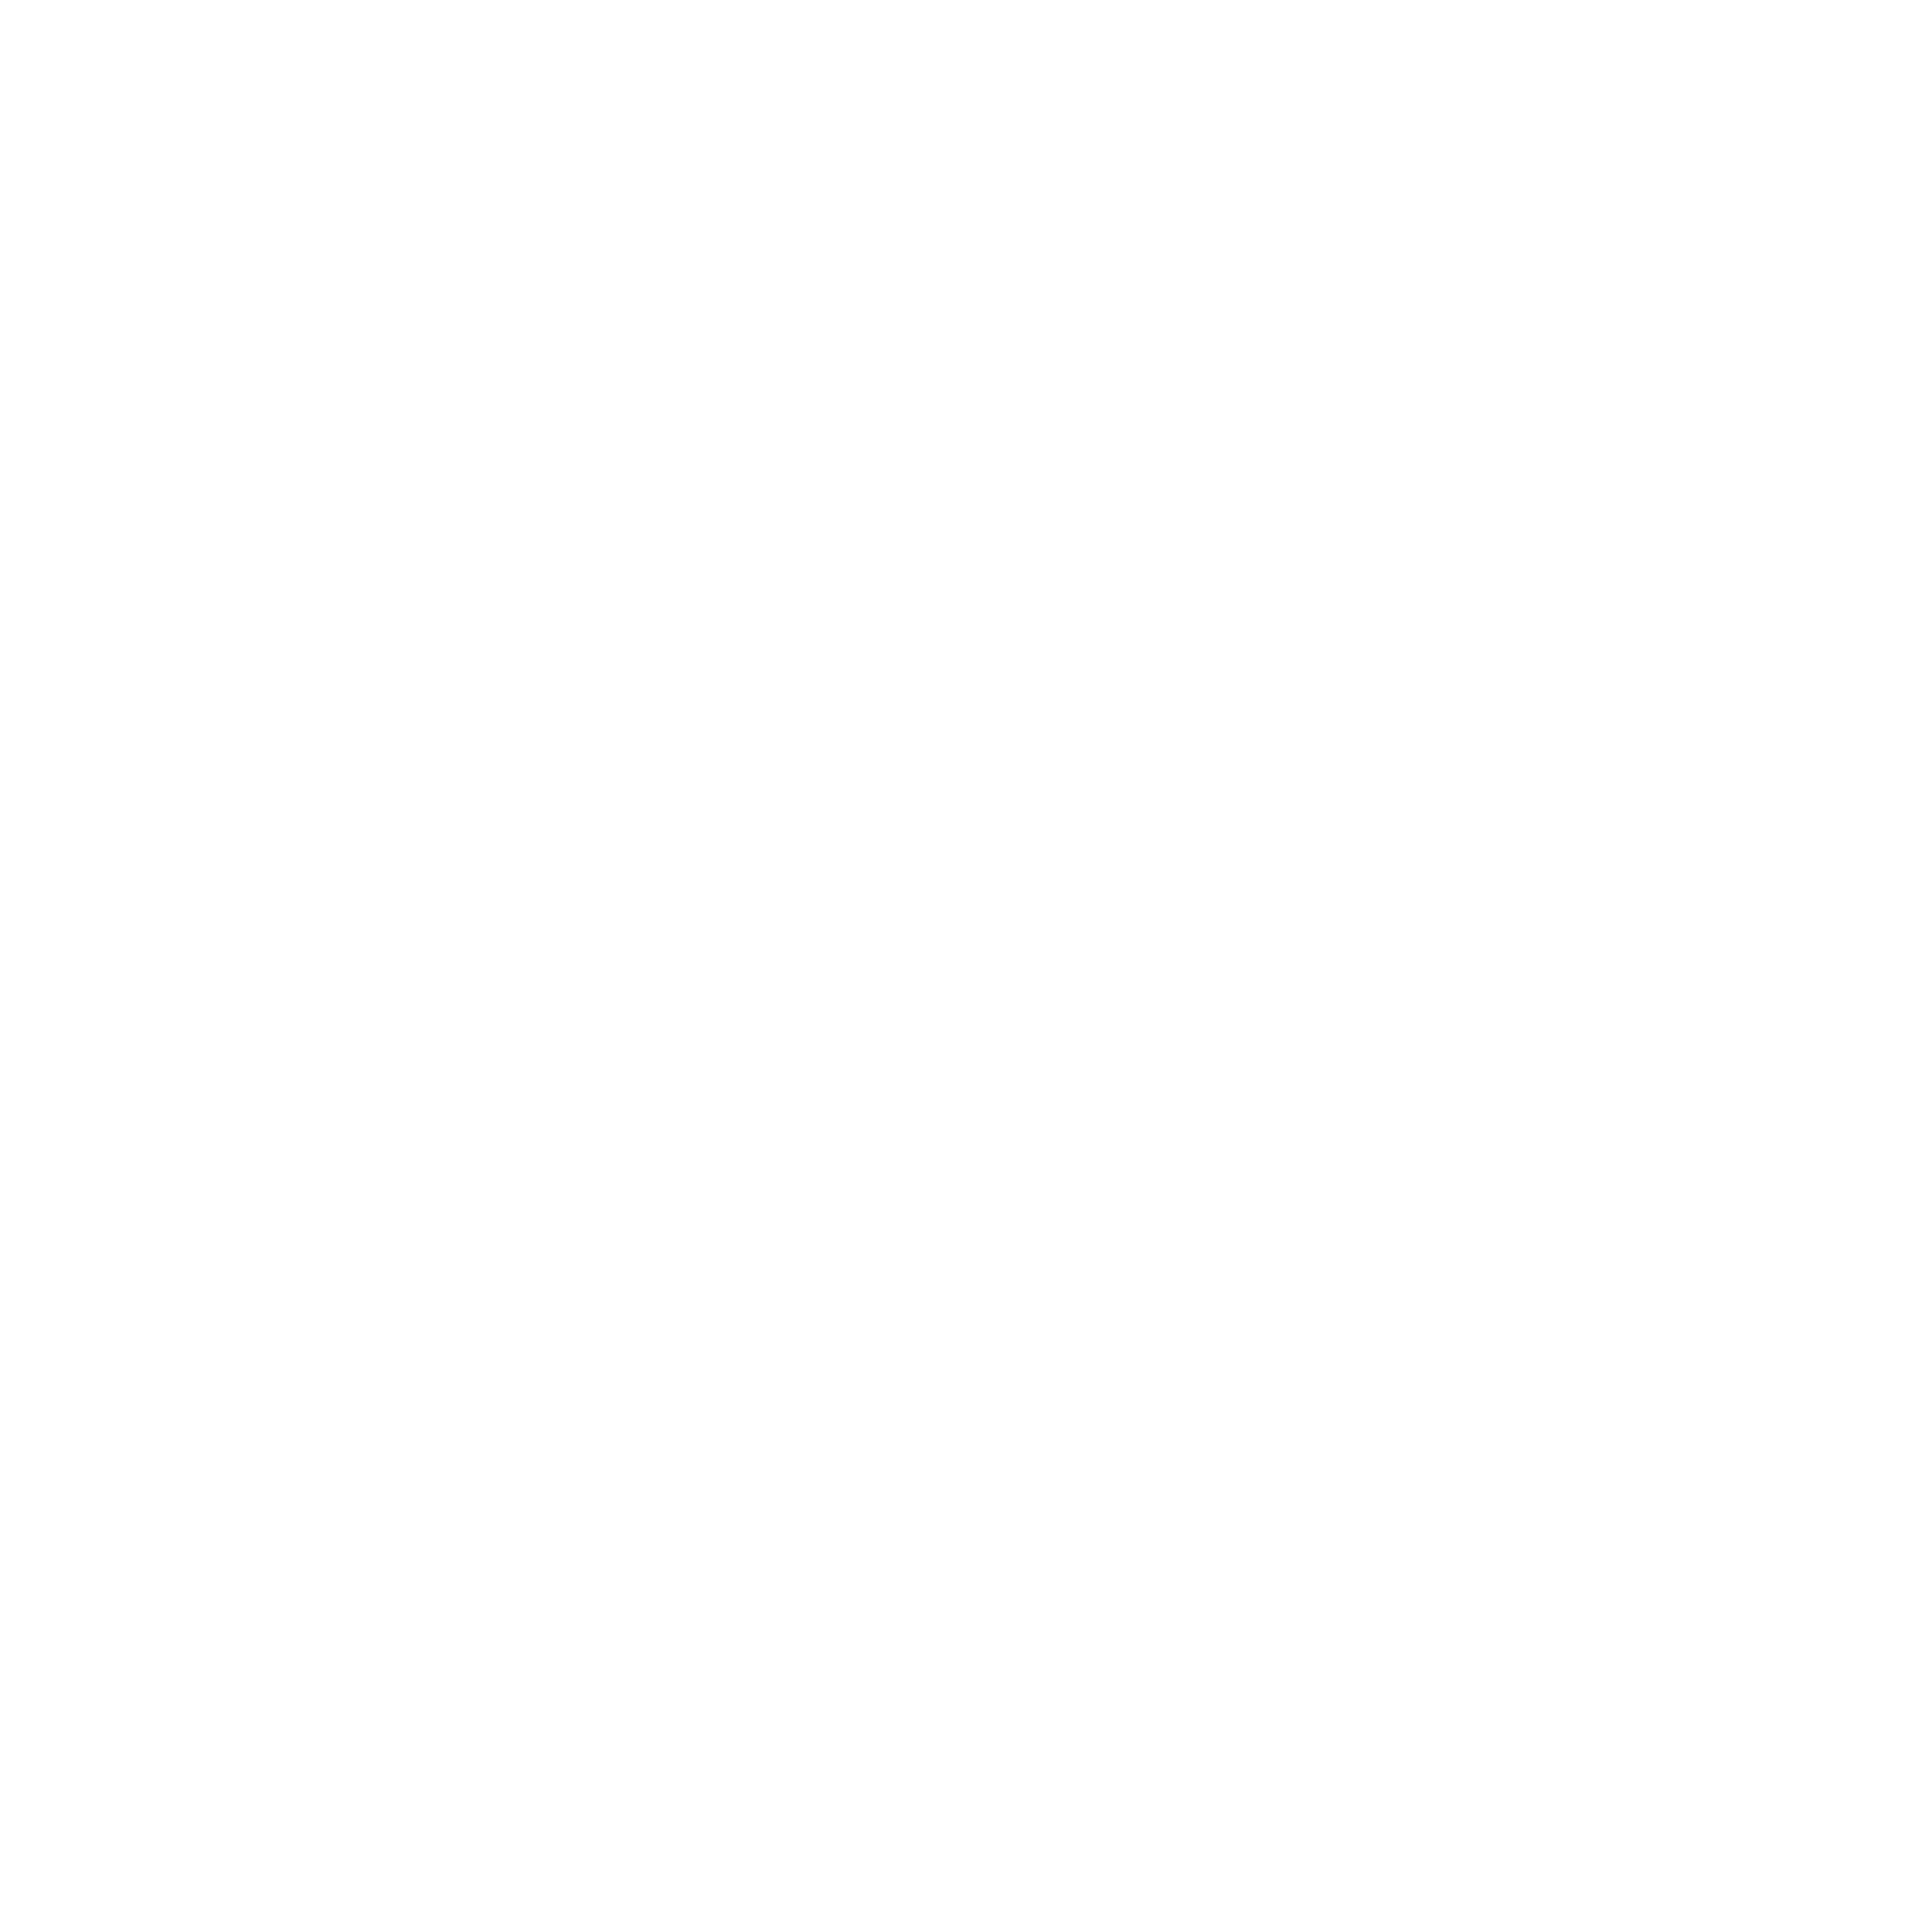 Scripps Company Logo - The E W Scripps Company Logo PNG Transparent & SVG Vector - Freebie ...